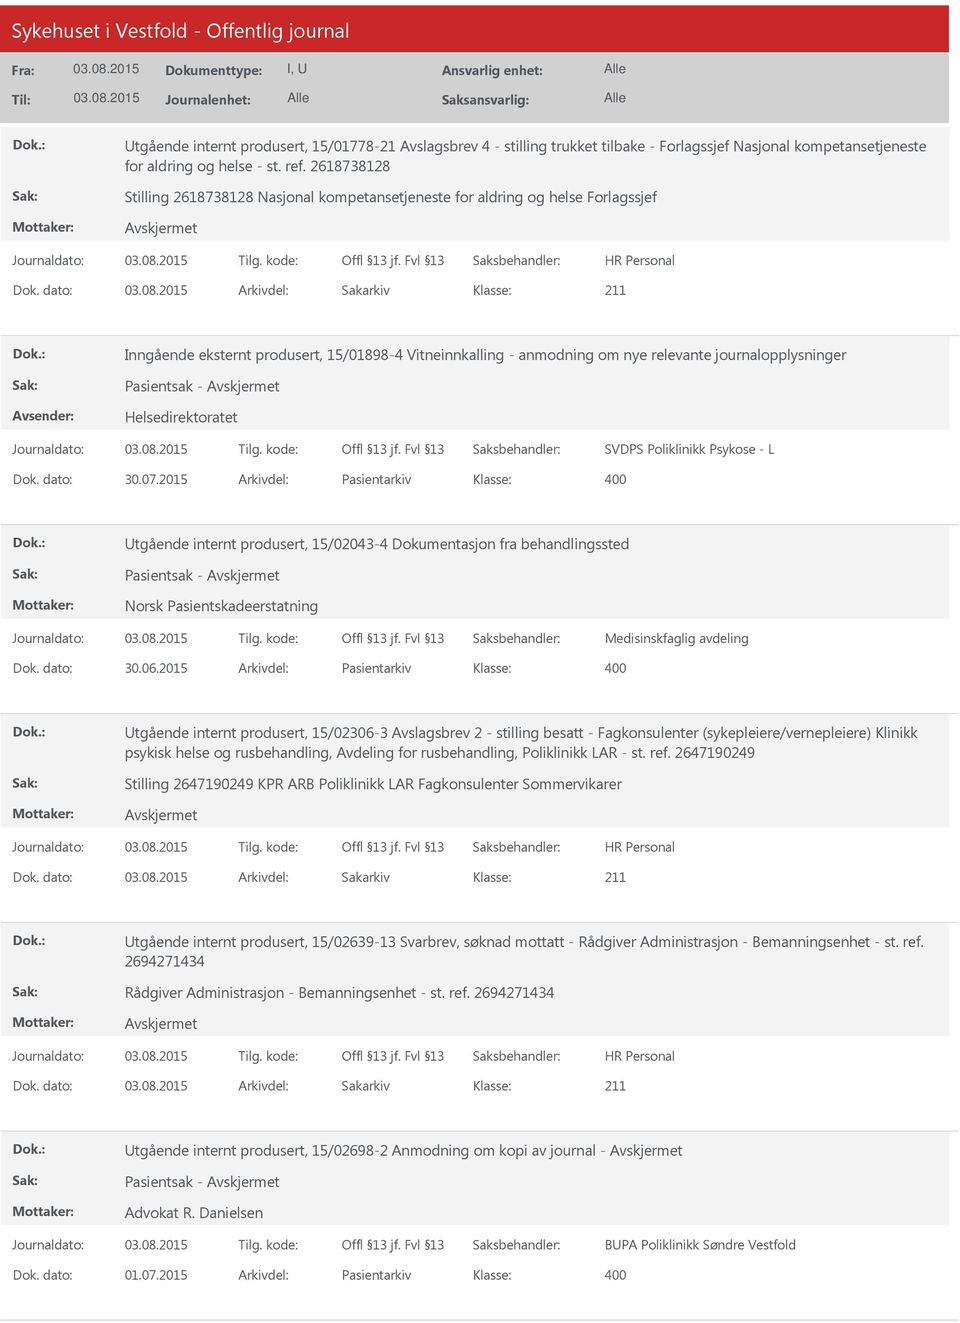 2015 Arkivdel: Pasientarkiv tgående internt produsert, 15/02043-4 Dokumentasjon fra behandlingssted Pasientsak - Norsk Pasientskadeerstatning Medisinskfaglig avdeling Dok. dato: 30.06.